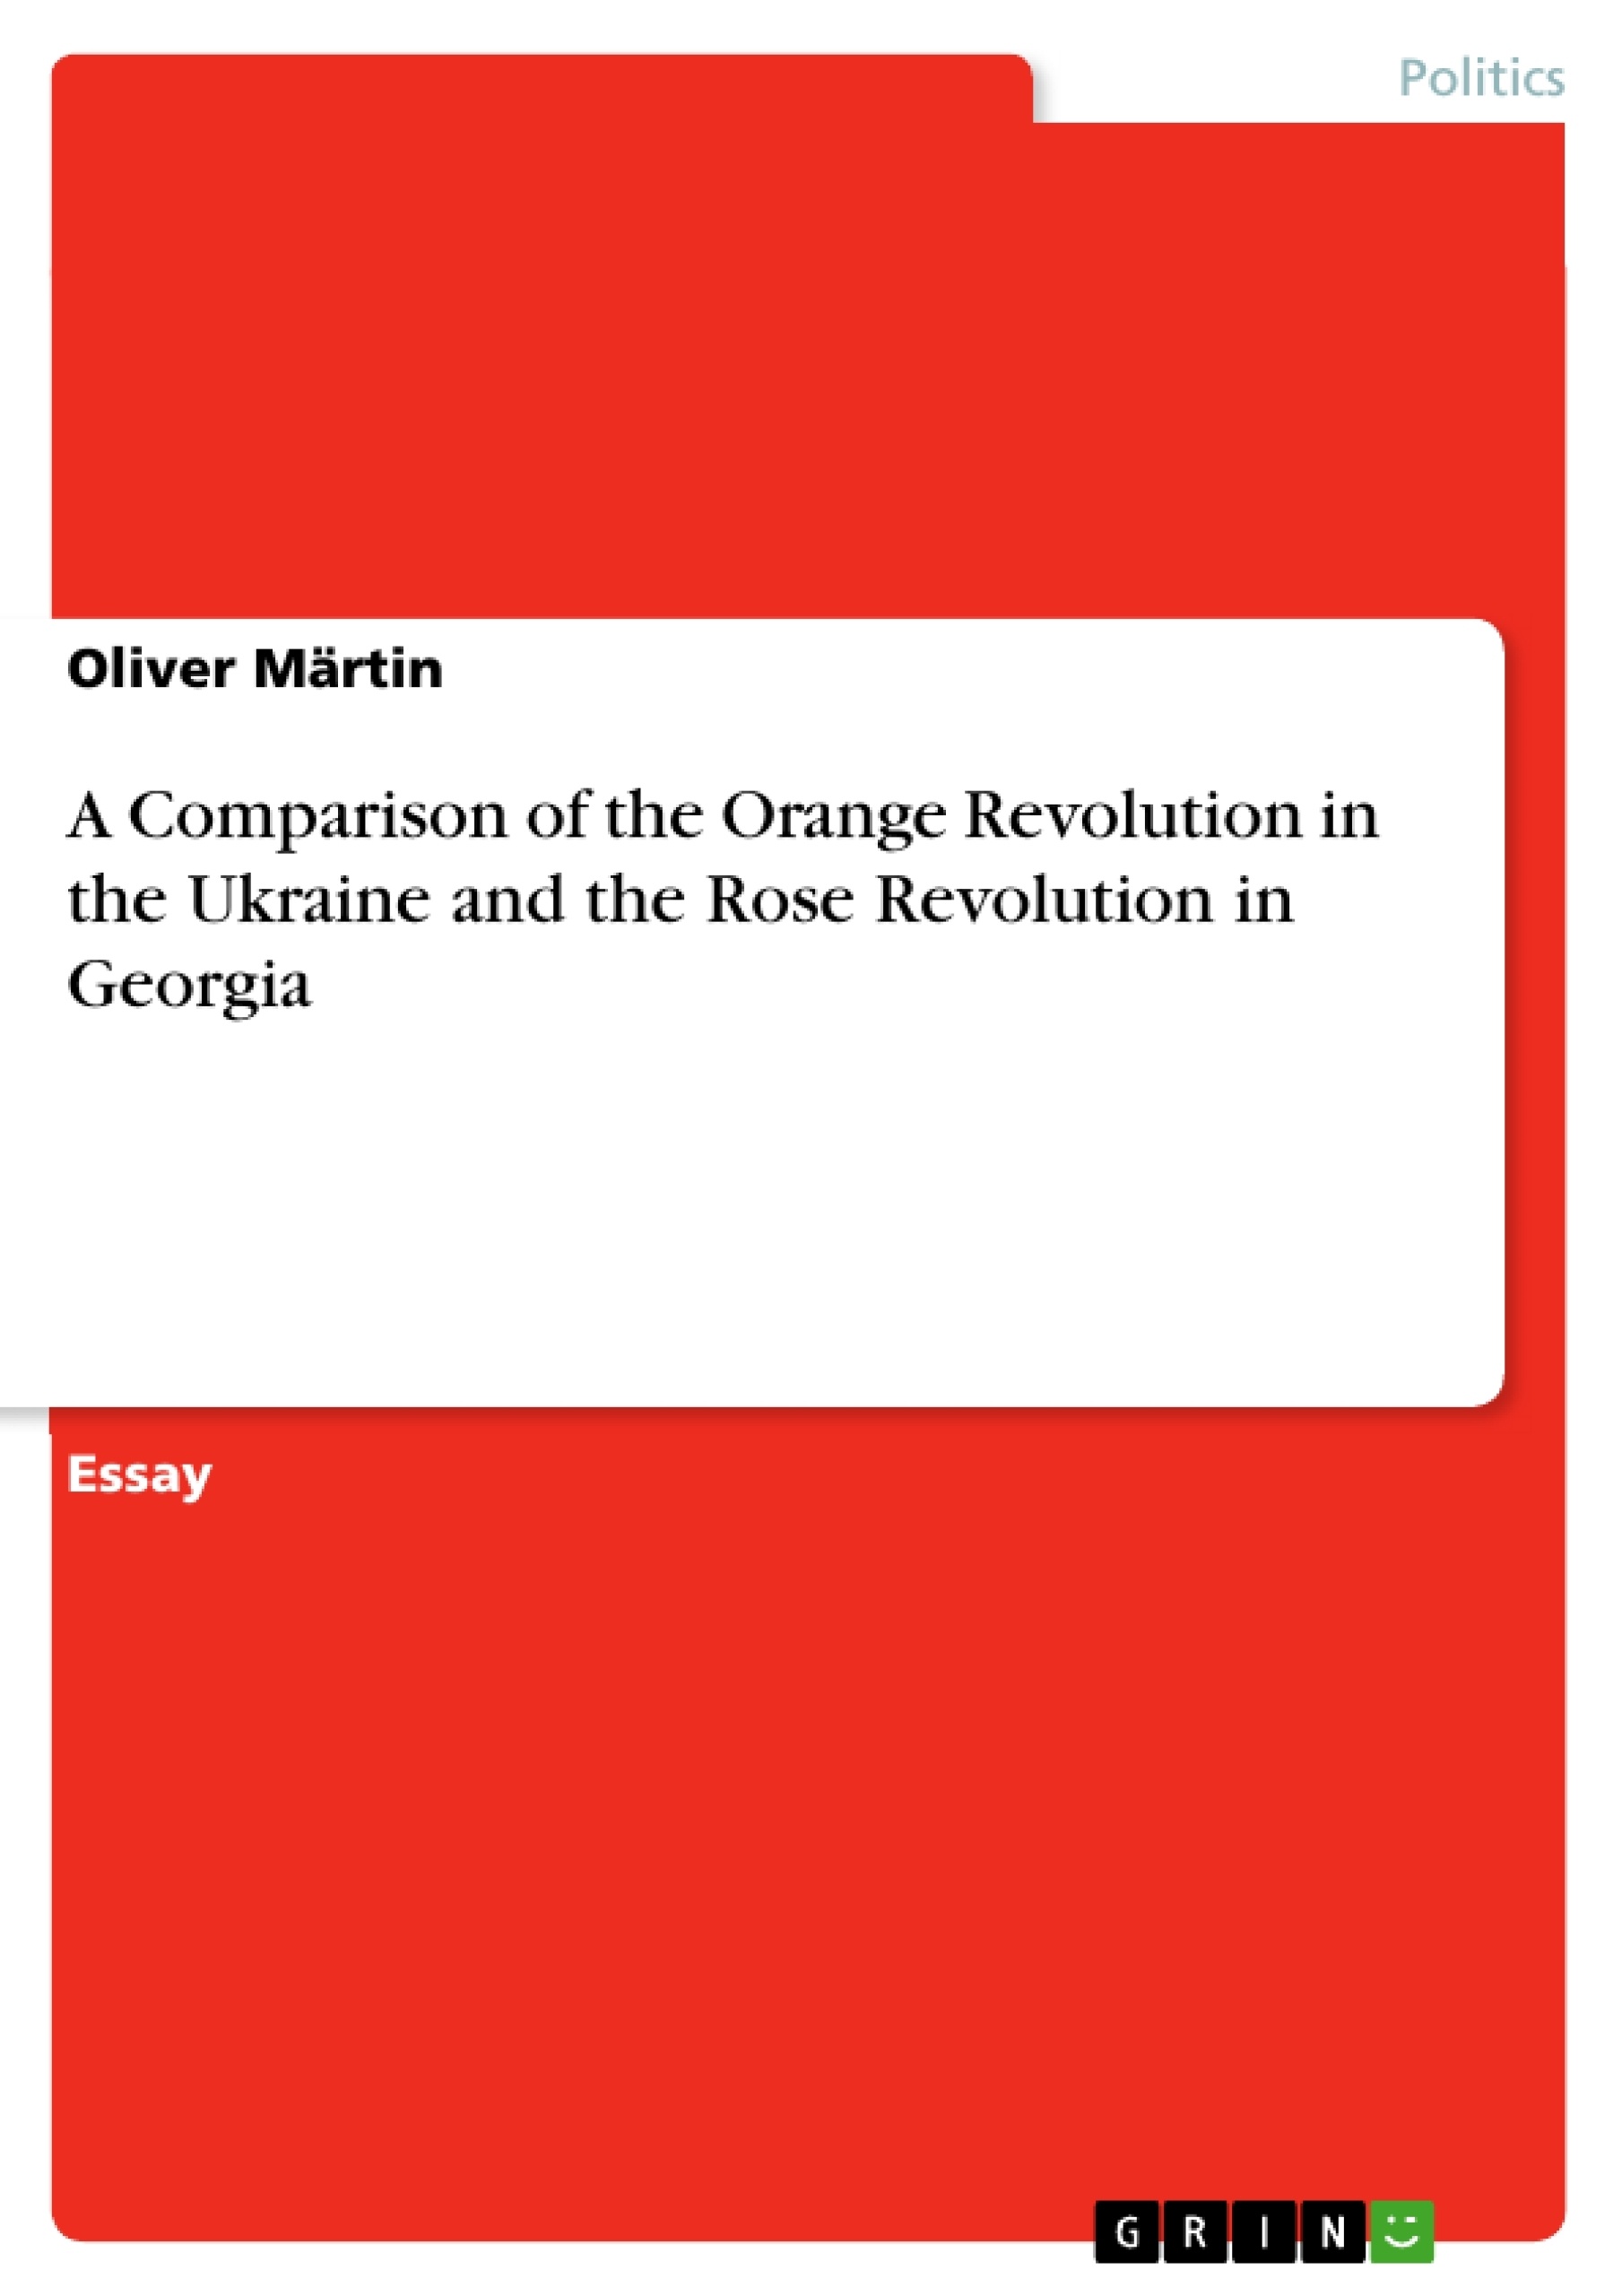 Title: A Comparison of the Orange Revolution in the Ukraine and the Rose Revolution in Georgia